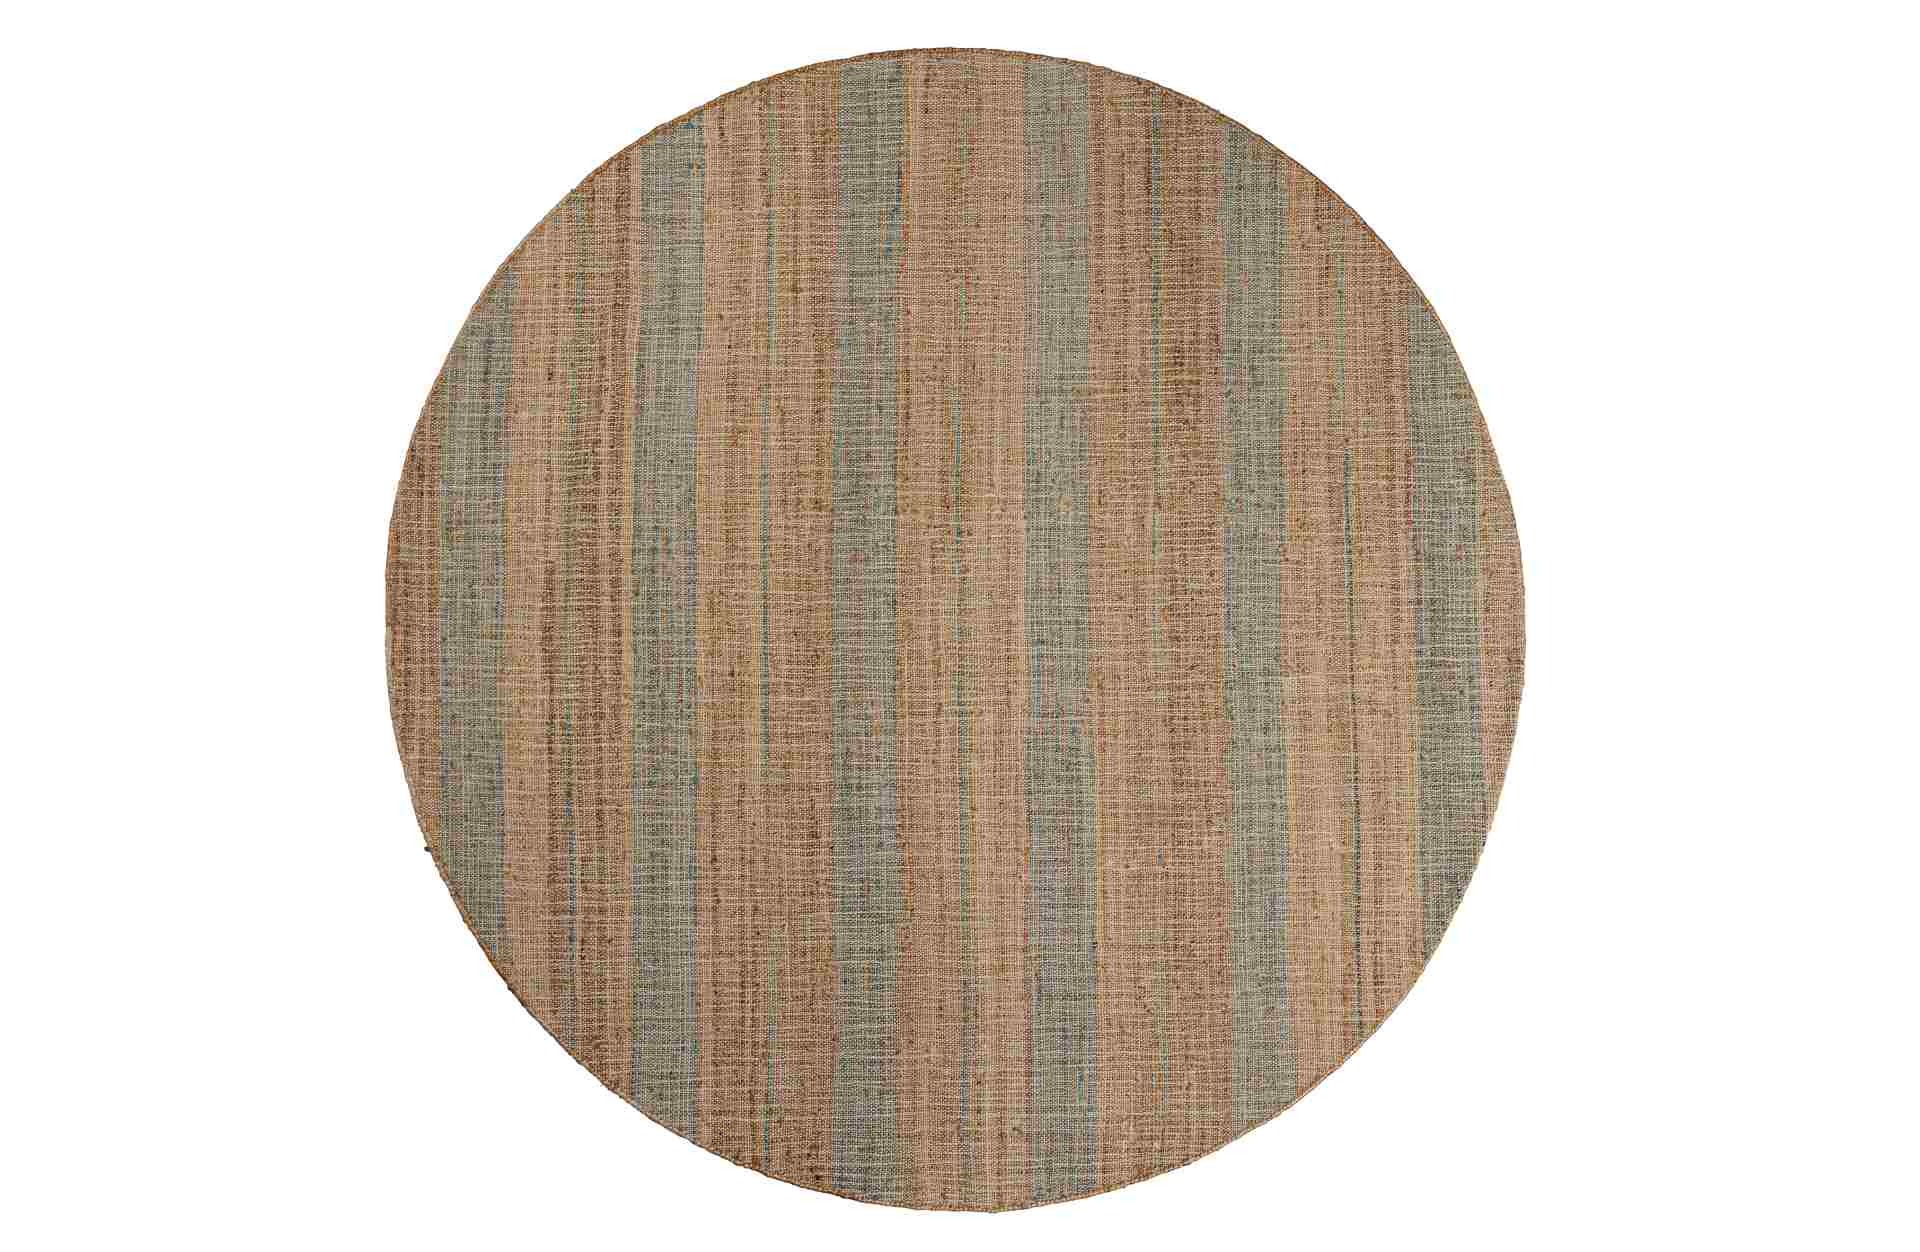 Der Teppich Jacky überzeugt mit seinem modernen Design. Gefertigt wurde er aus Jute, welche einen natürlichen Farbton besitzt. Der Teppich besitzt ein Durchmesser von 200 cm.